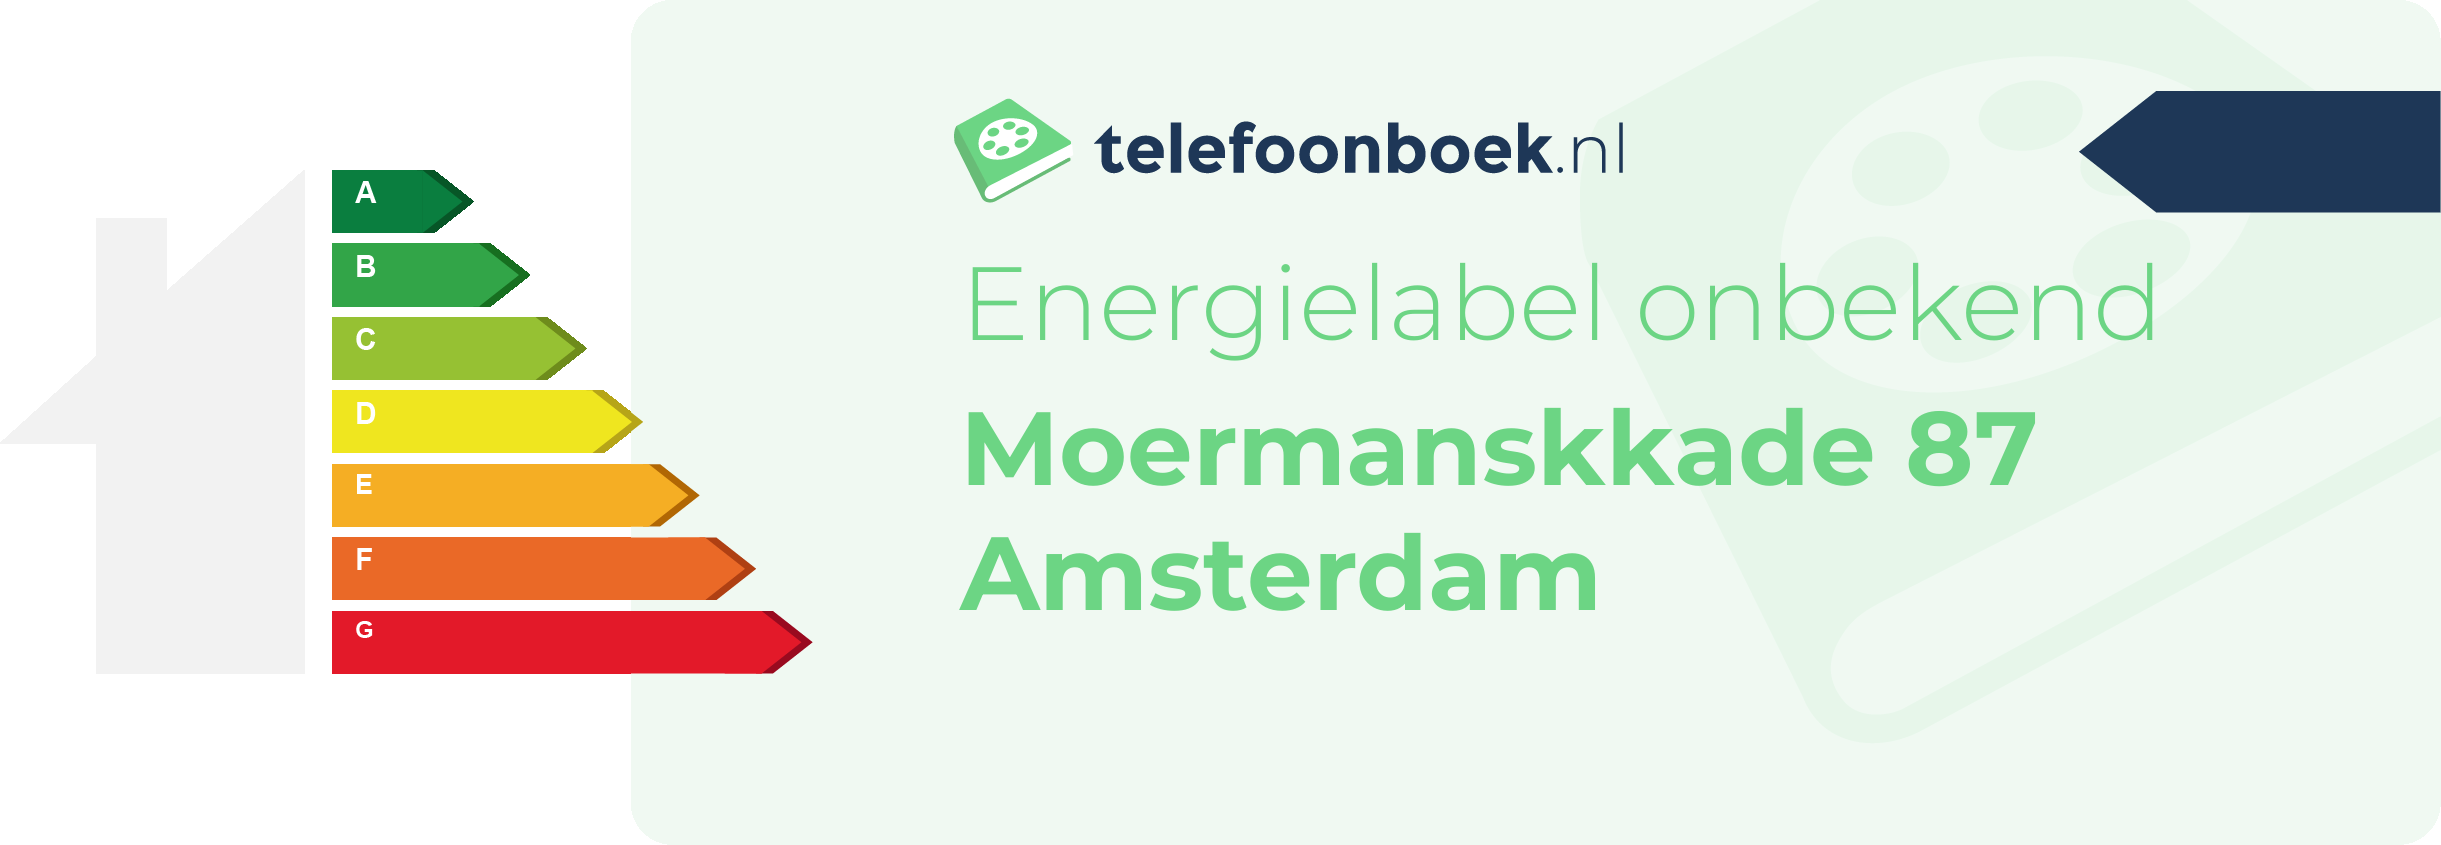 Energielabel Moermanskkade 87 Amsterdam